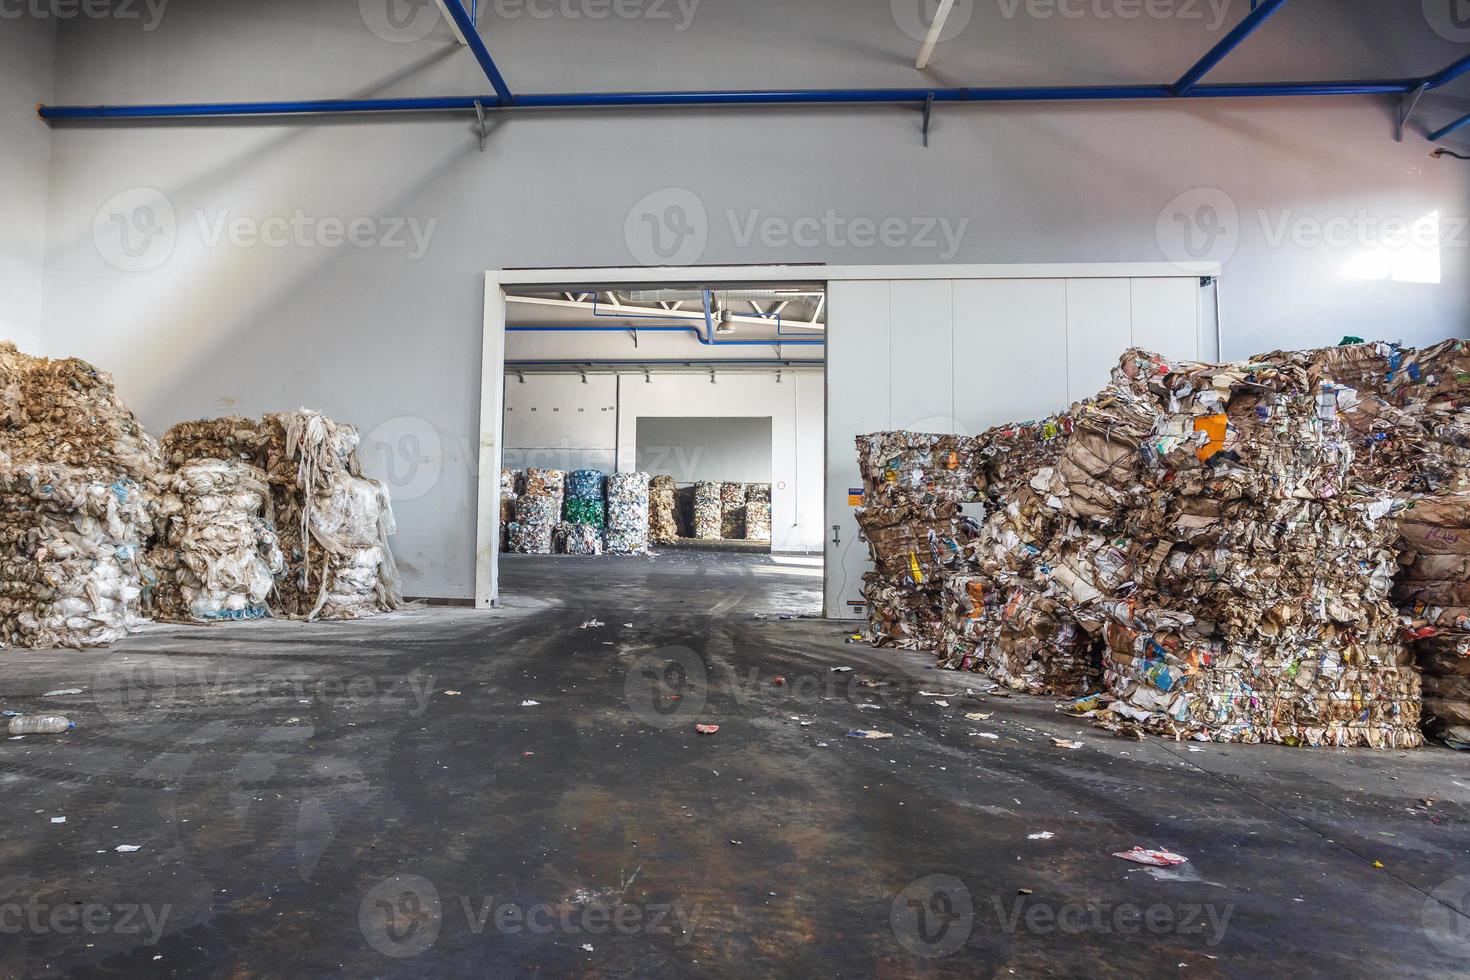 balas de plástico de basura en la planta de tratamiento de residuos. reciclaje separado y almacenamiento de basura para su posterior eliminación, clasificación de basura. negocio de clasificación y tratamiento de residuos. foto